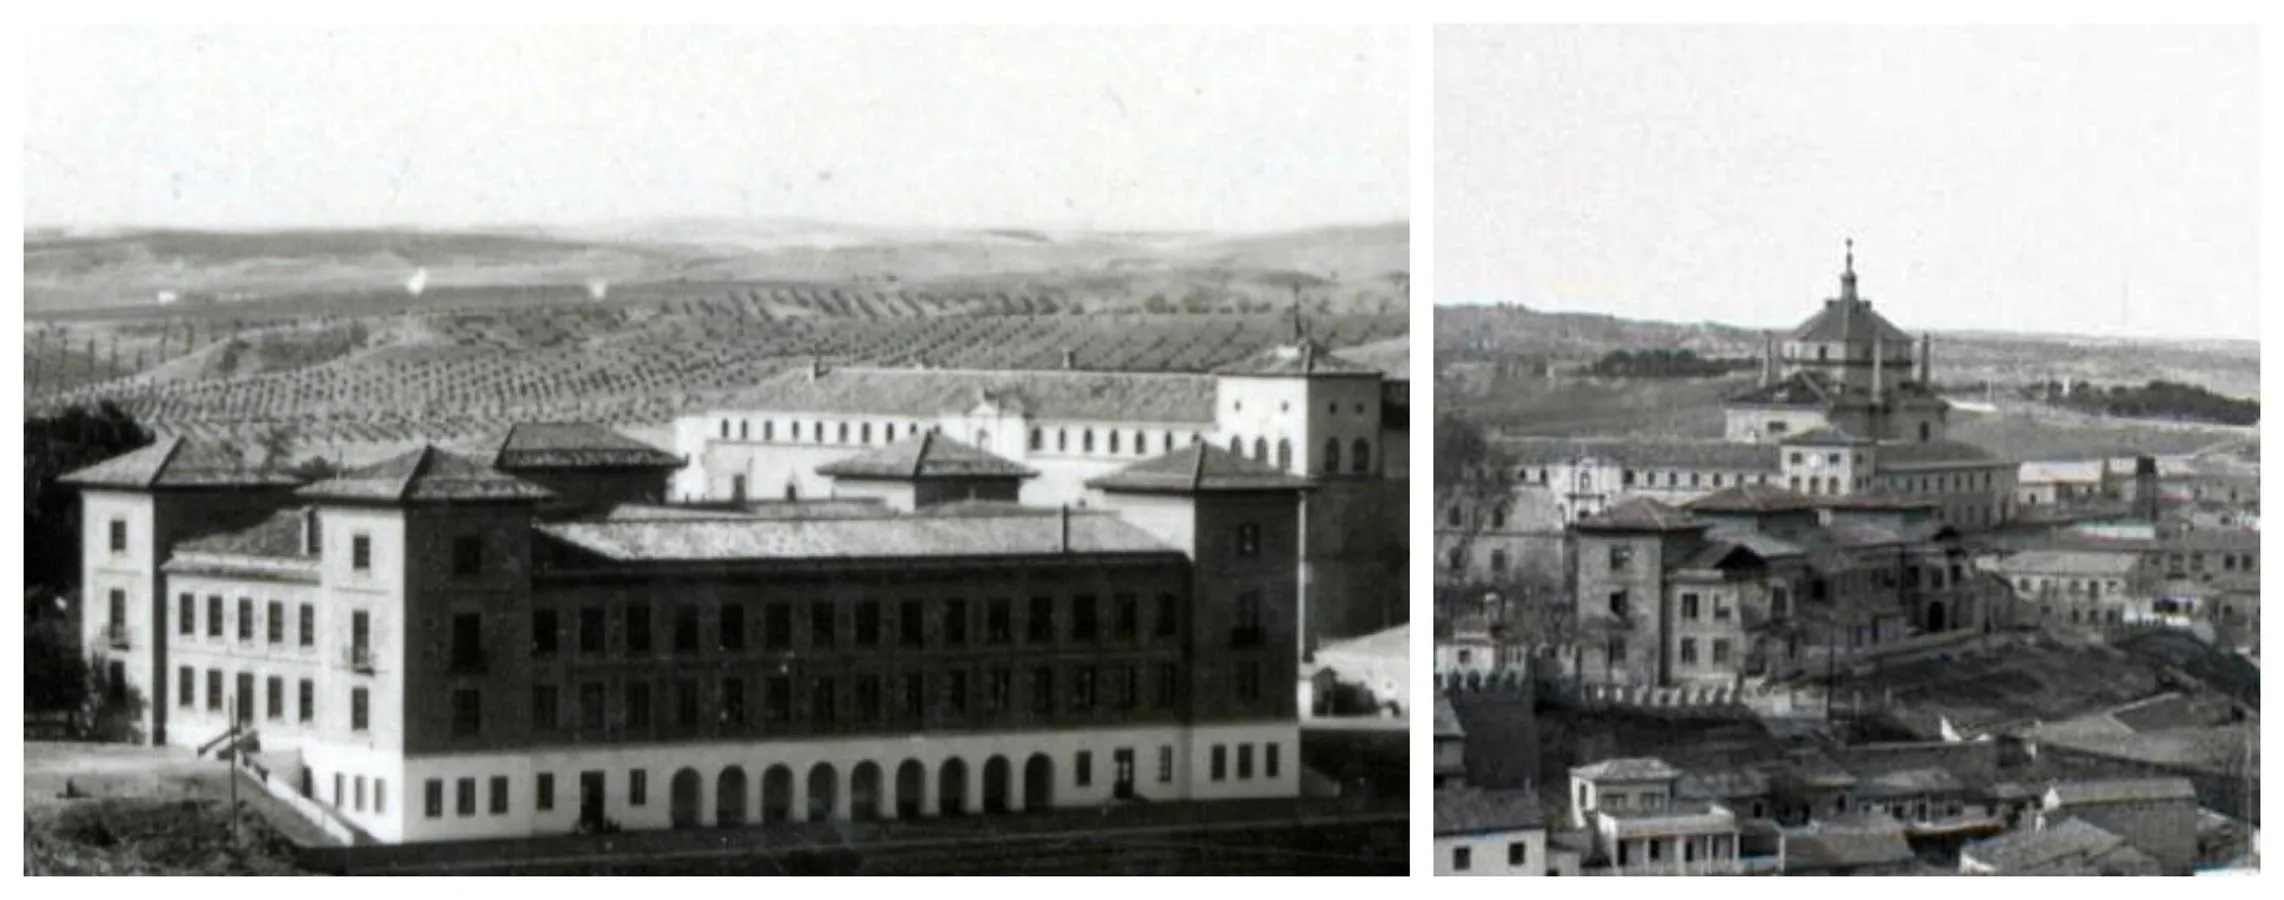 Edificio de la Escuela de Magisterio hacia 1935 y aspecto del mismo en los años sesenta. FOTOS ARCHIVO MUNICIPAL DE TOLED